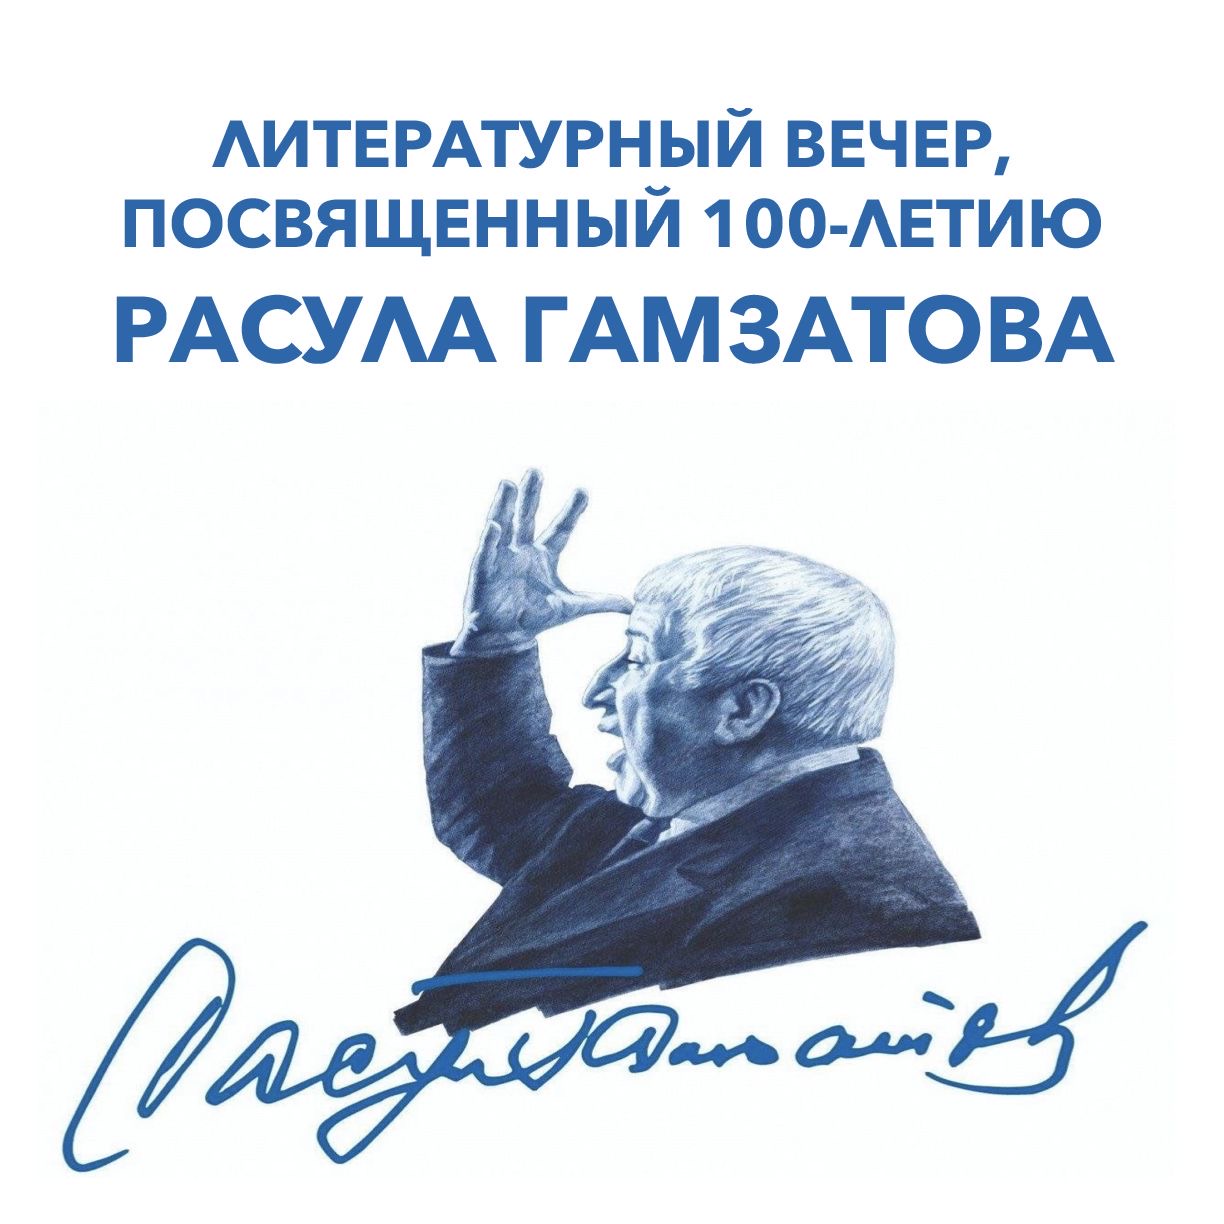 Литературный вечер, посвященный 100-летию народного поэта Дагестана Расула Гамзатова